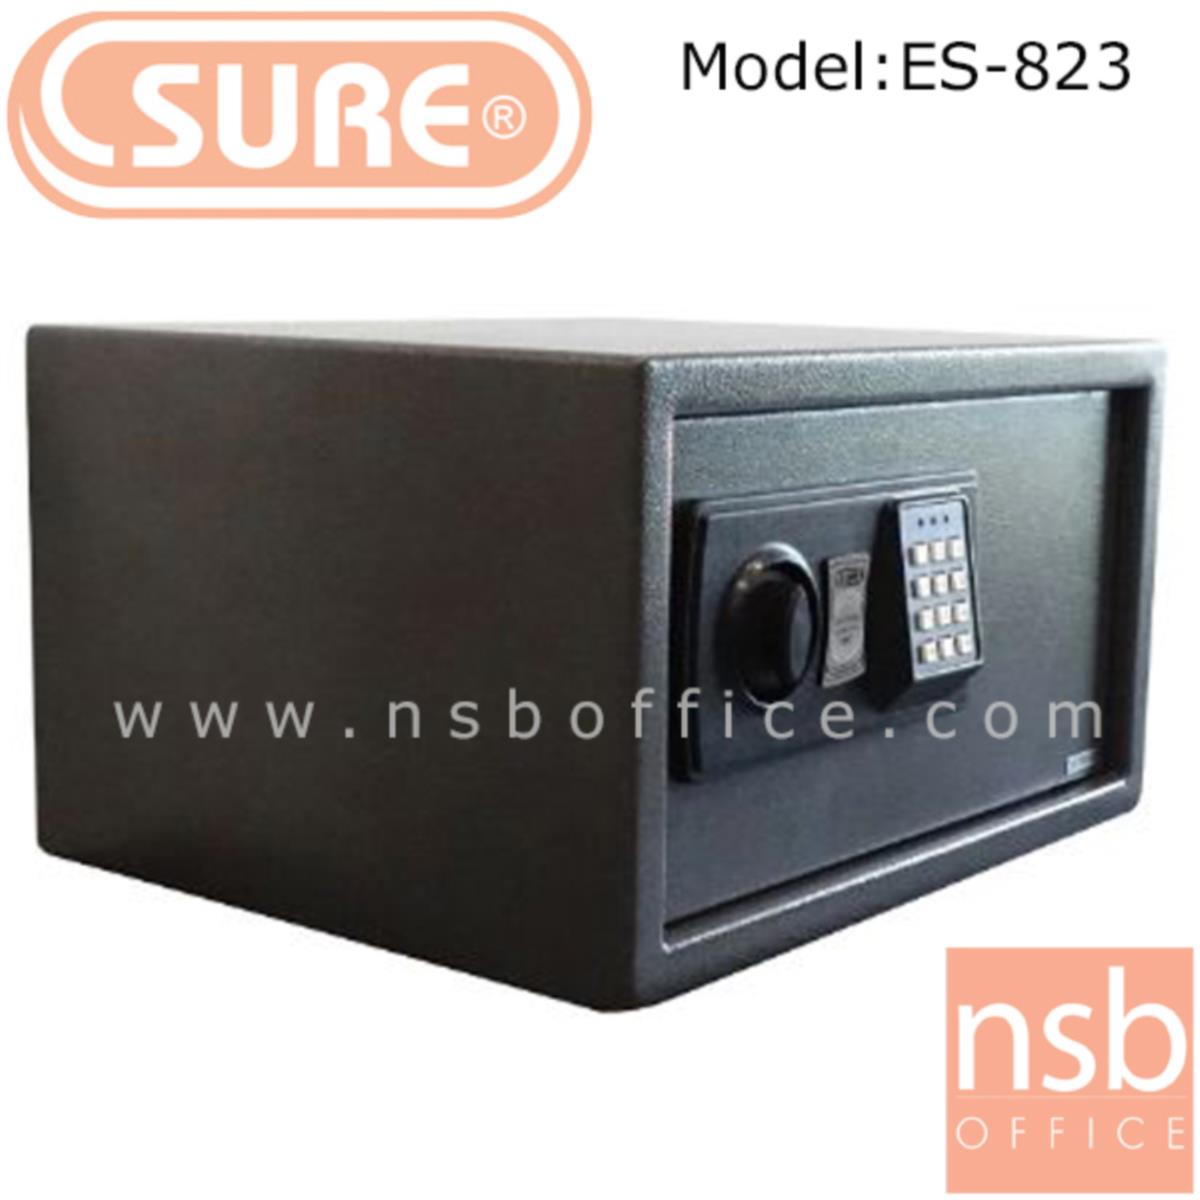 ตู้เซฟดิจตอล SR-ES823 น้ำหนัก 9.5 กก. (1 รหัสกด / ปุ่มหมุนบิด)   